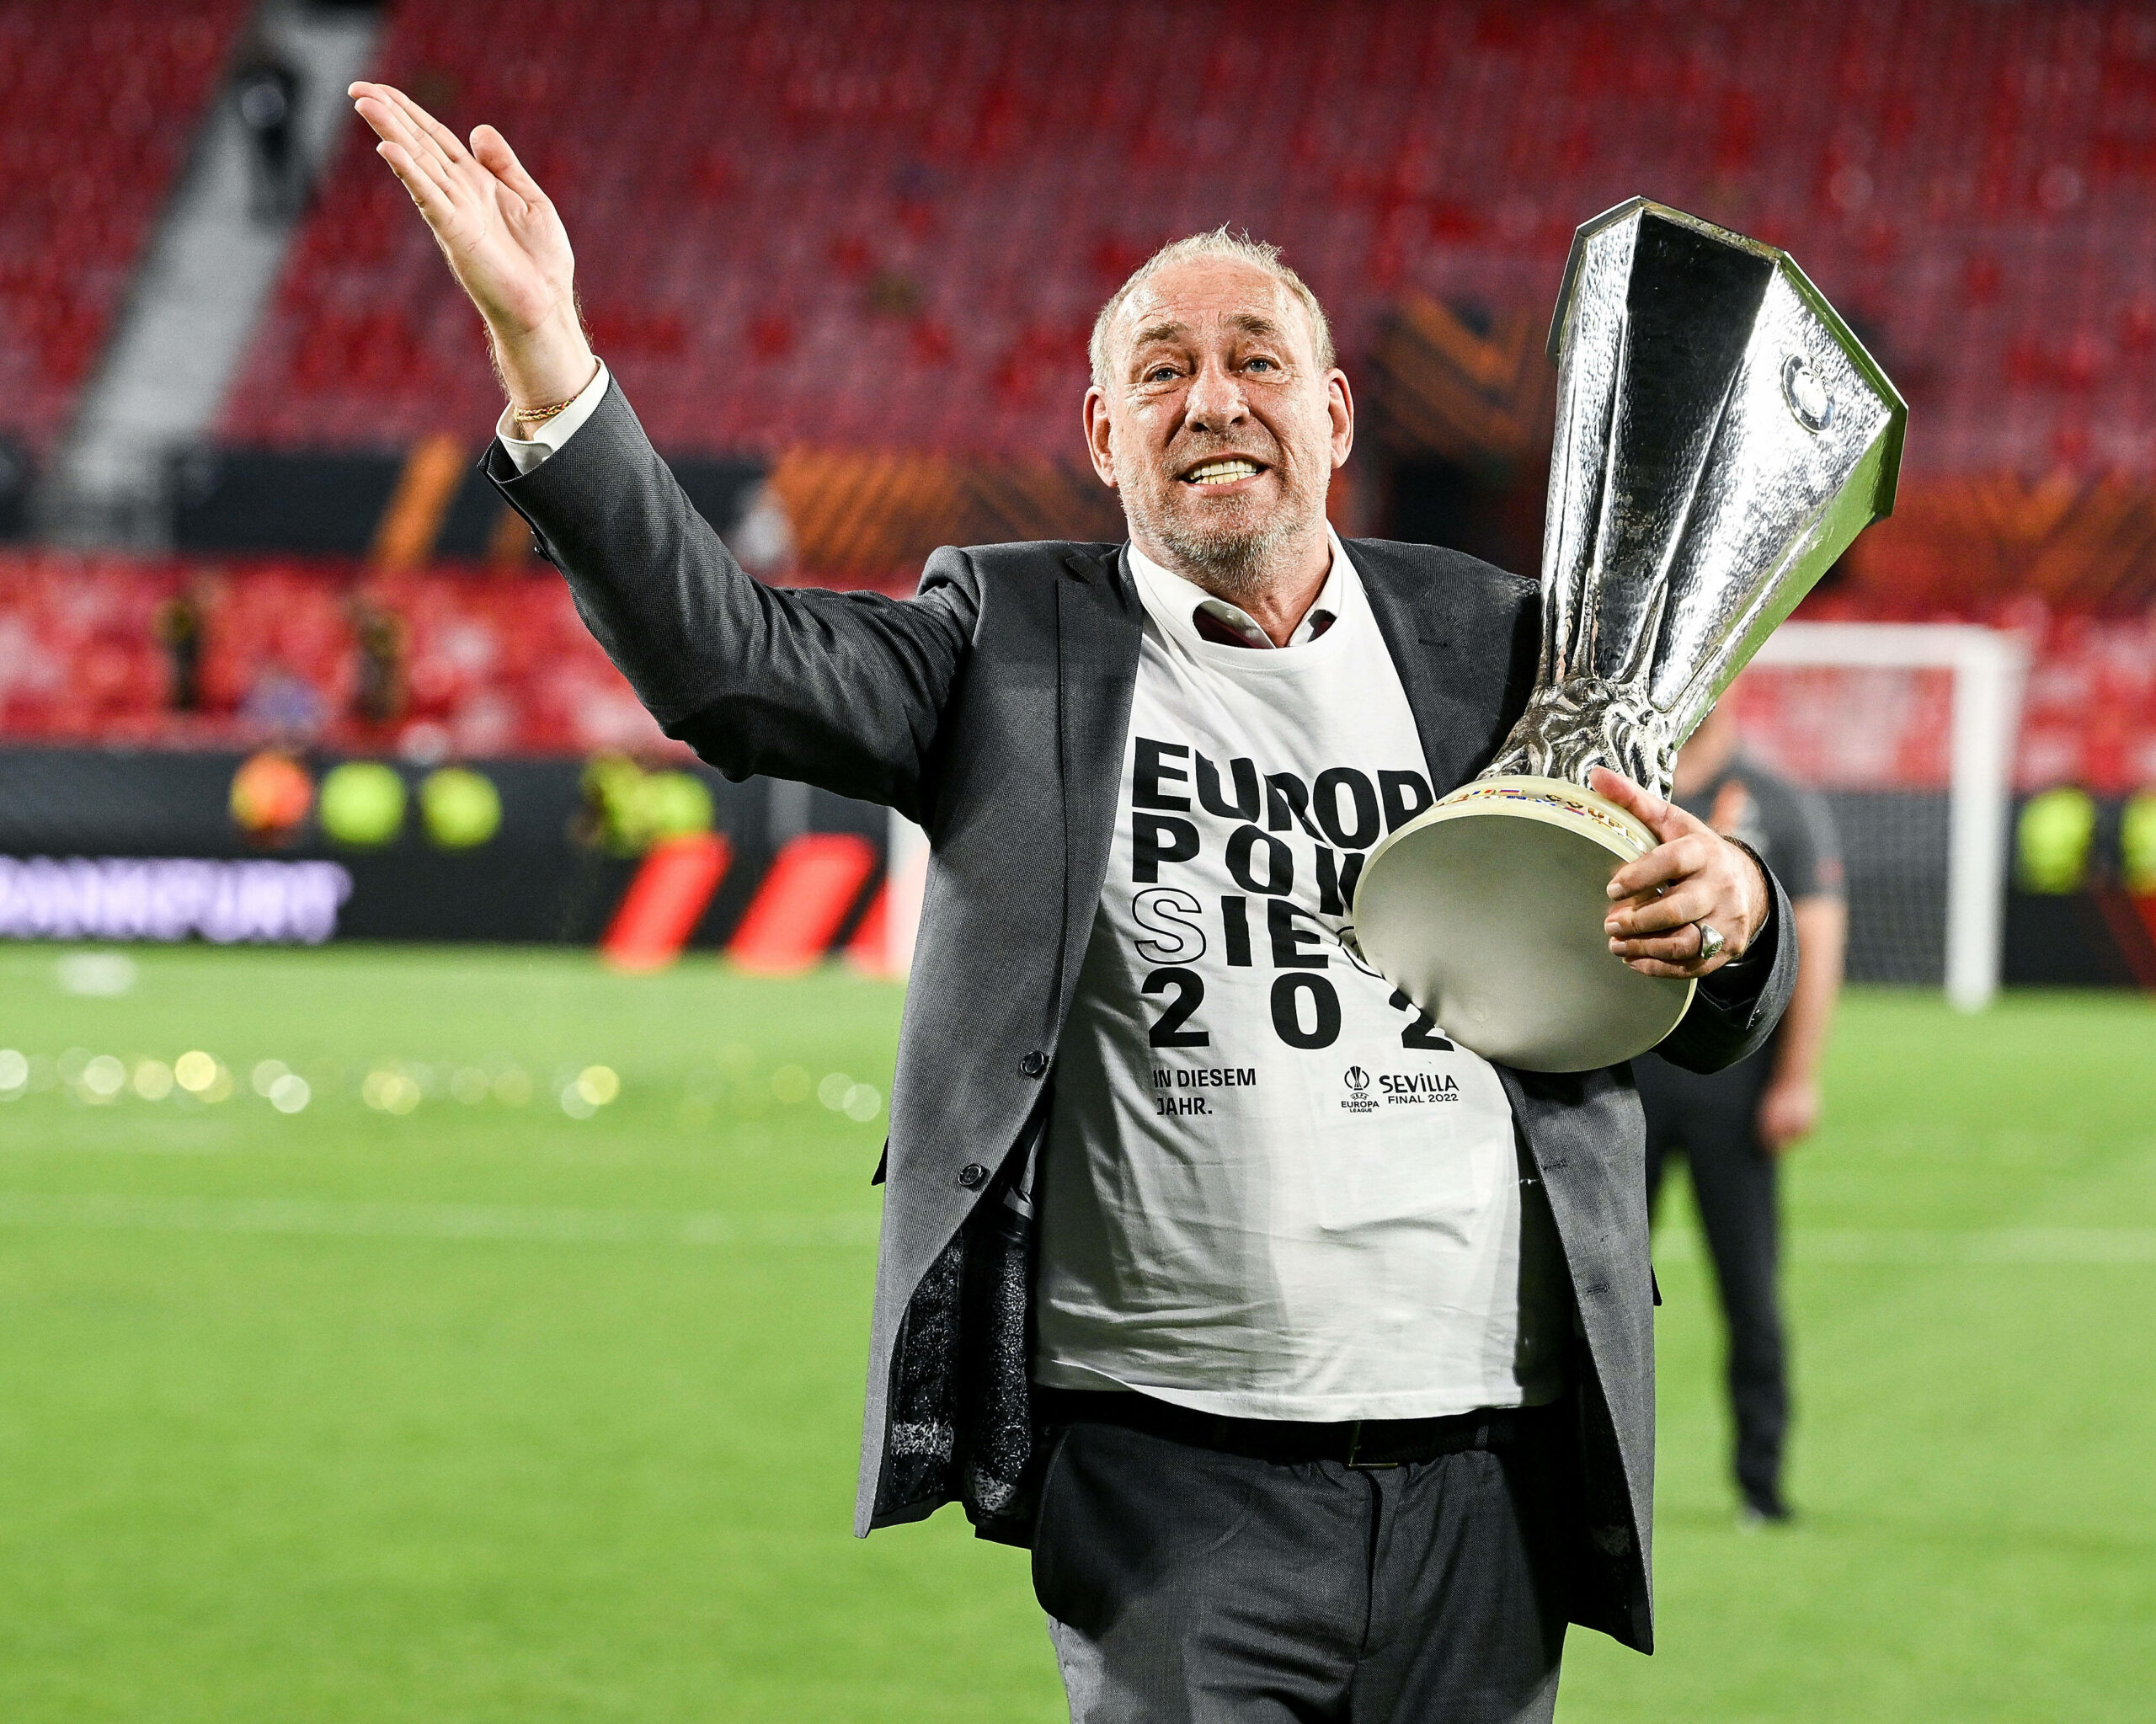 Frankfurts Präsident Peter Fischer feiert den Gewinn der Europa League mit Pokal.